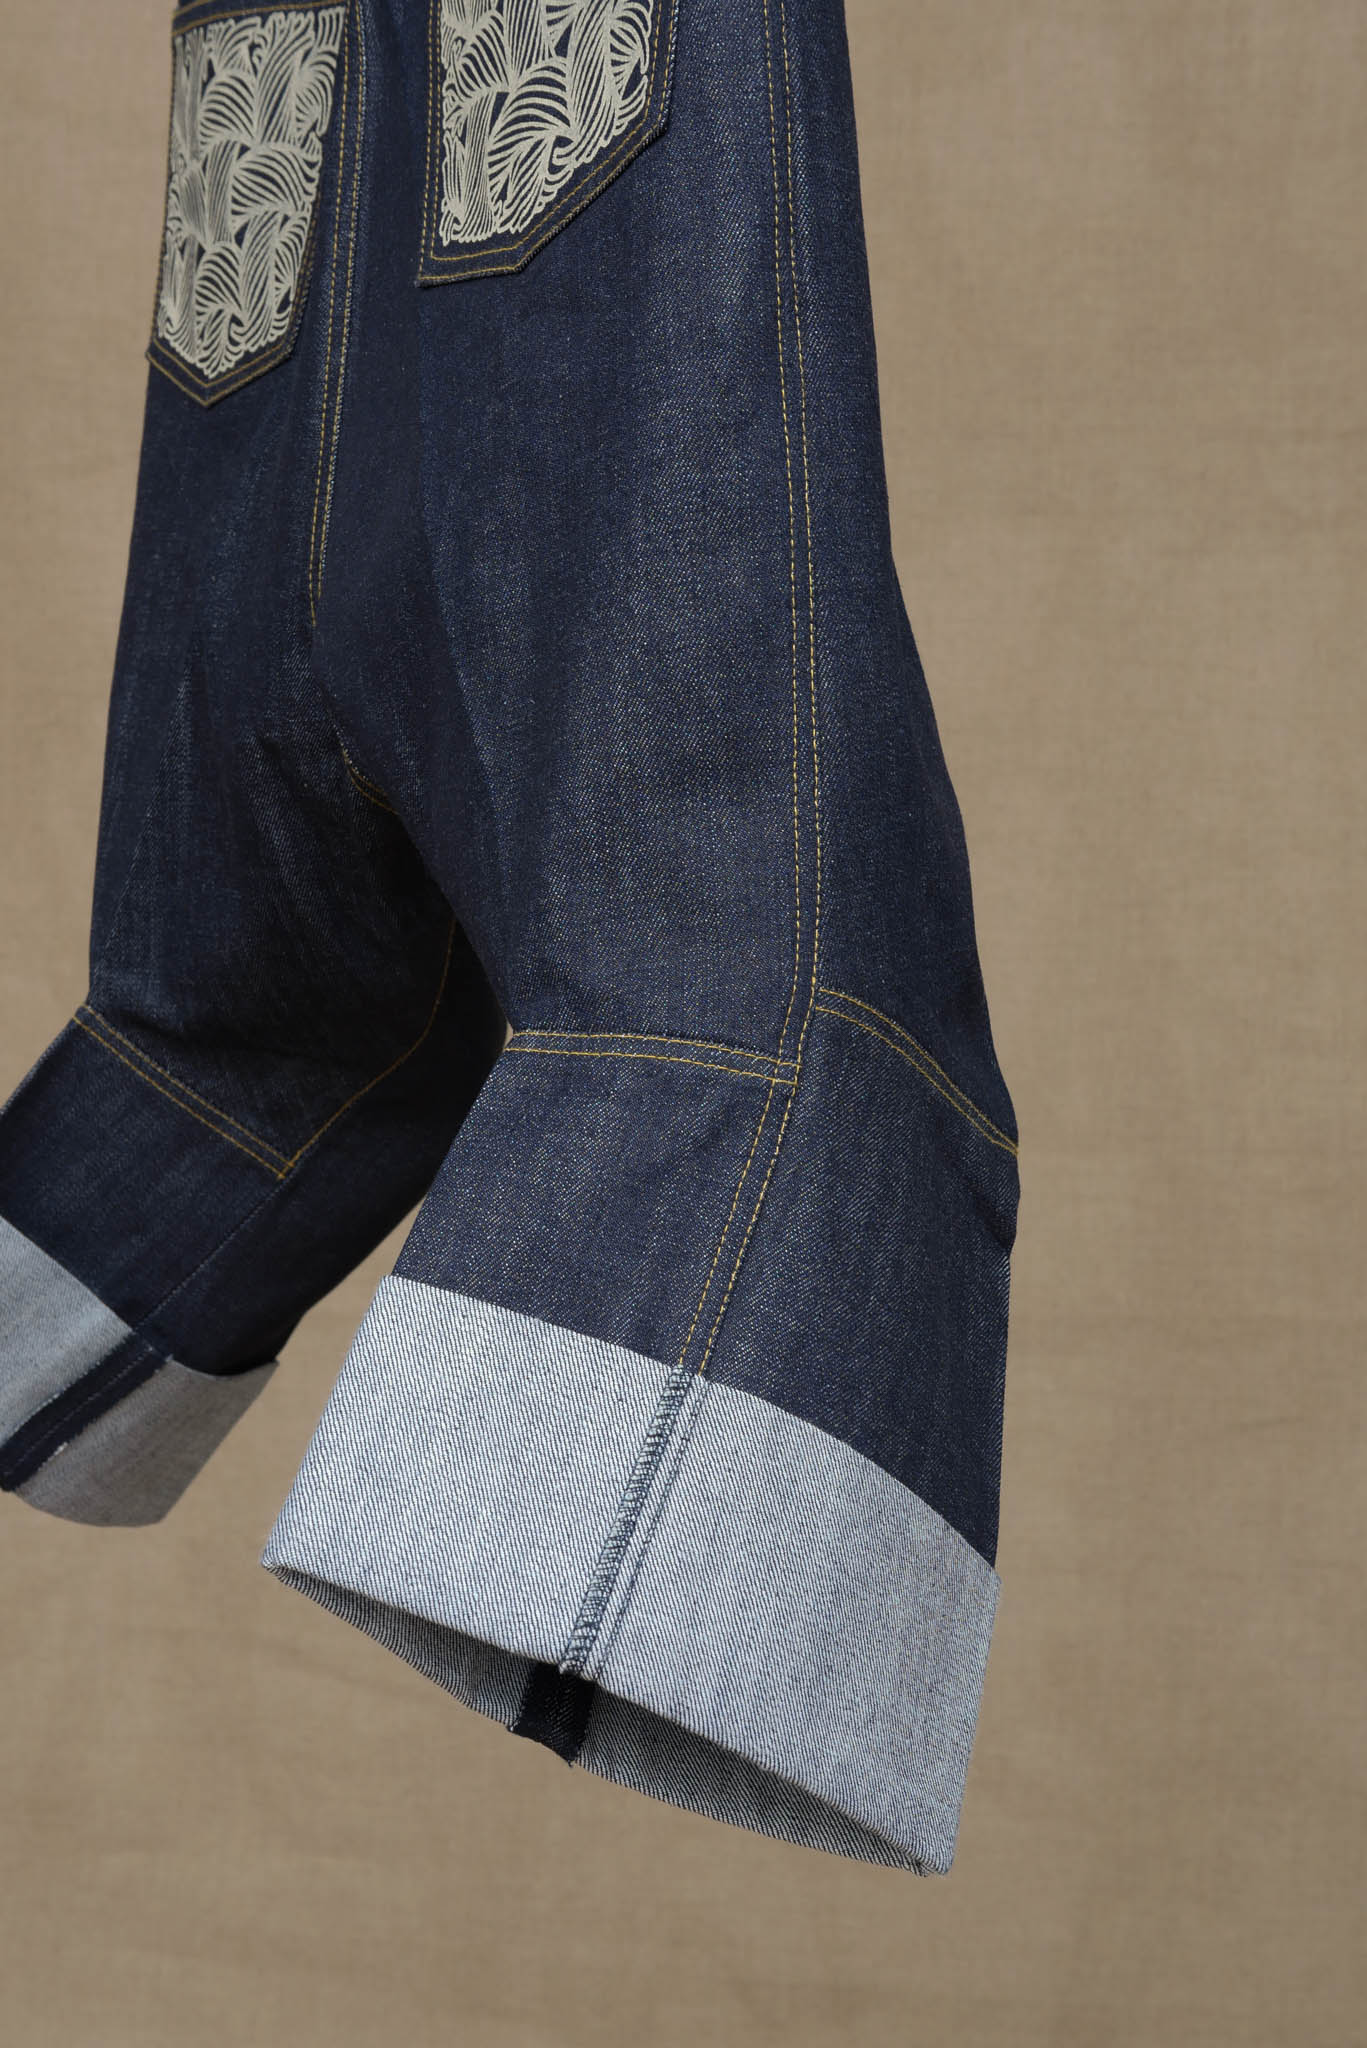 Christopher NEMETH Archive Curve Leg Embroidered Punk Rock Jeans M 31 Japan